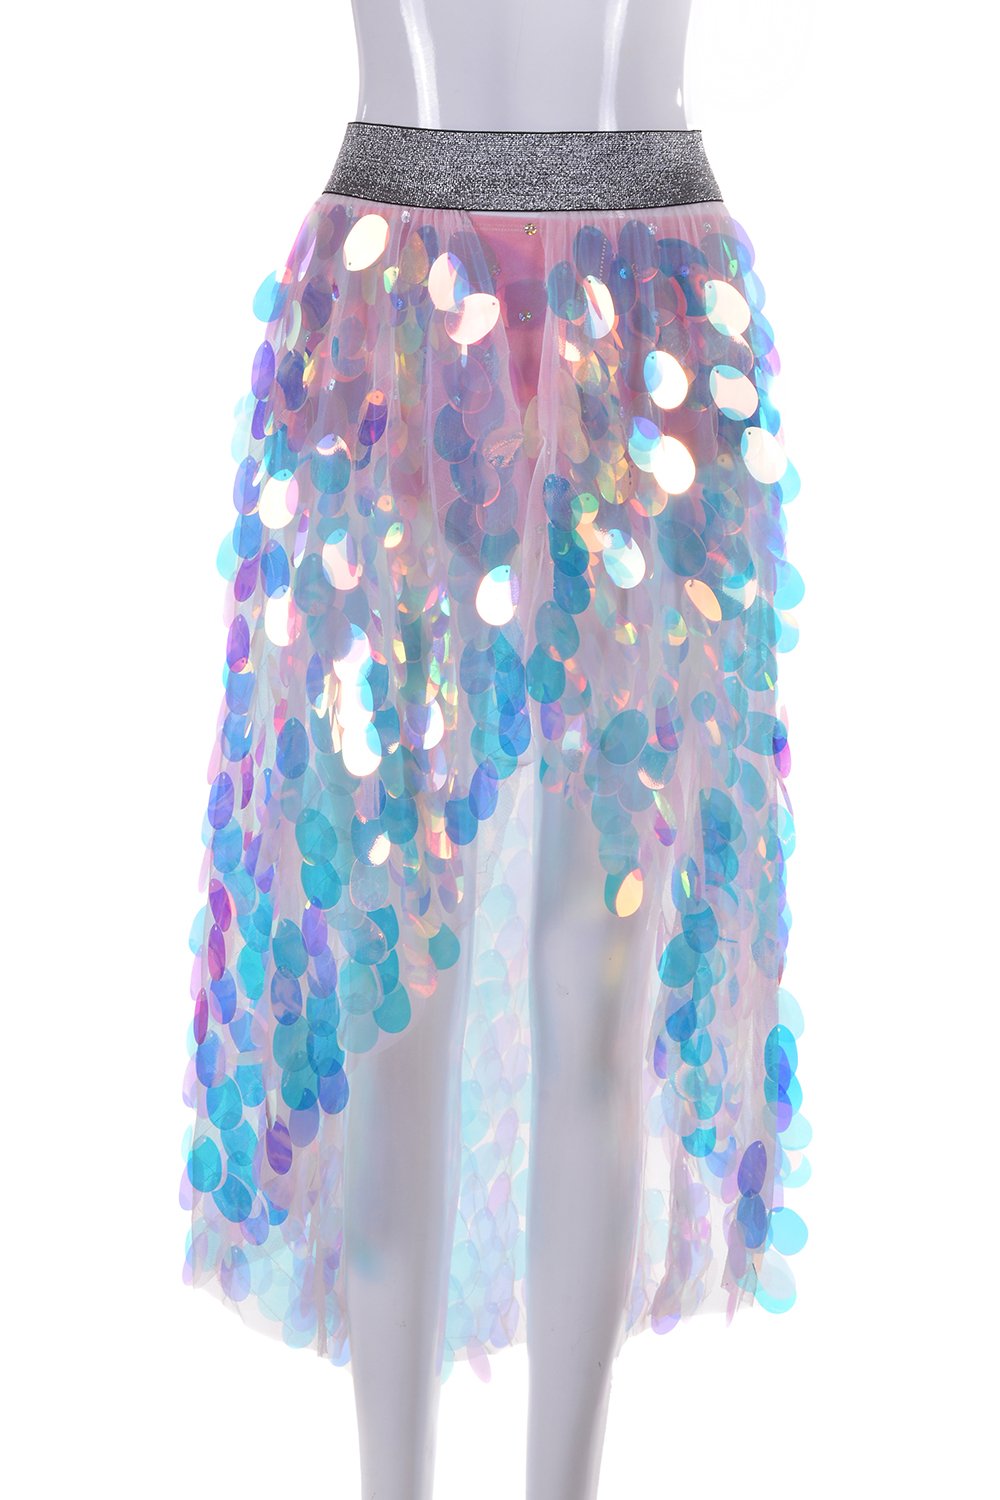 Unicorn Tears Sequin Skirt (Long)